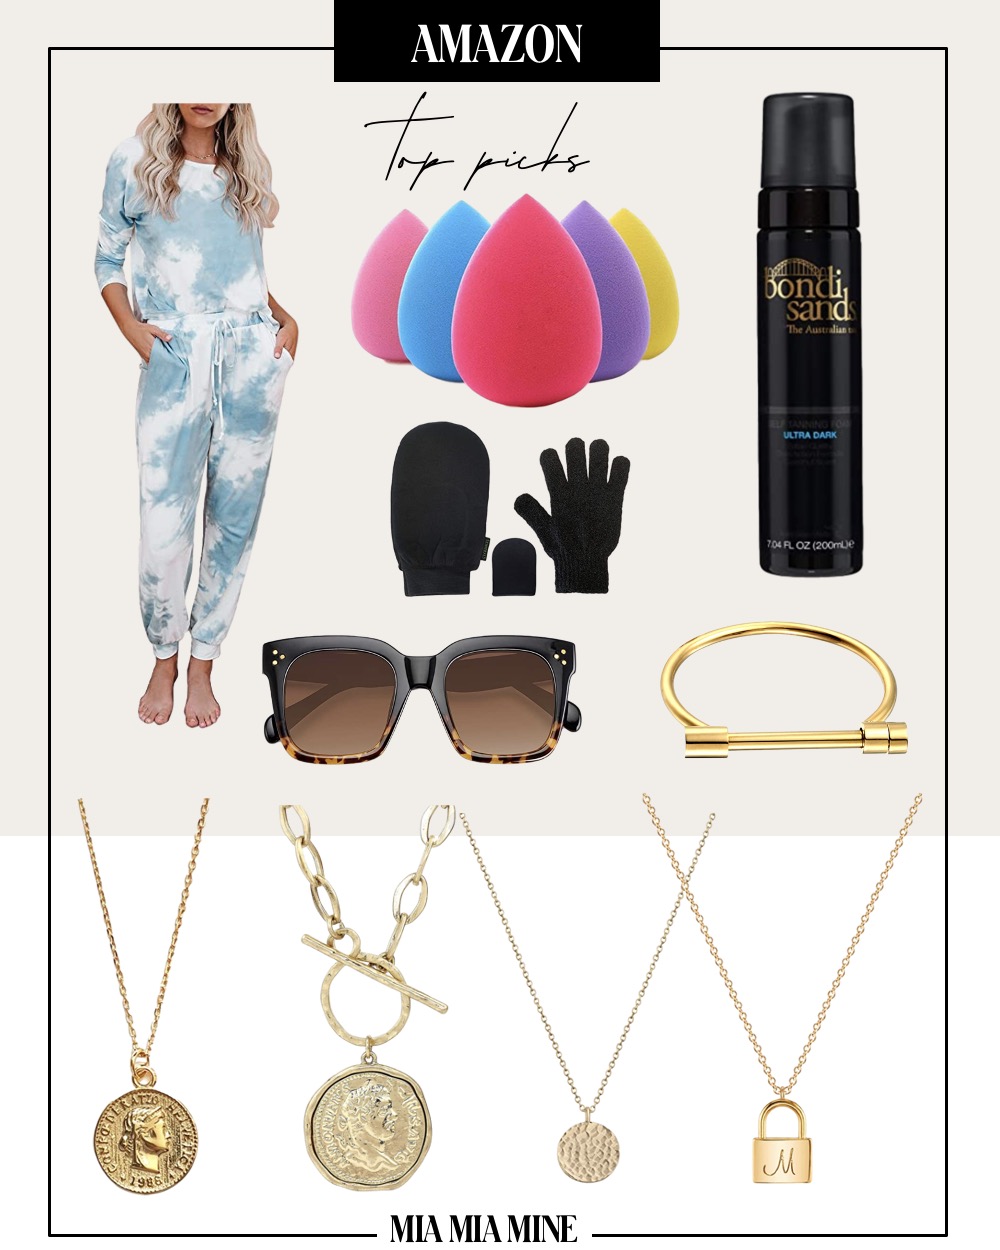 amazon jewelry and beauty picks by fashion blogger mia mia mine